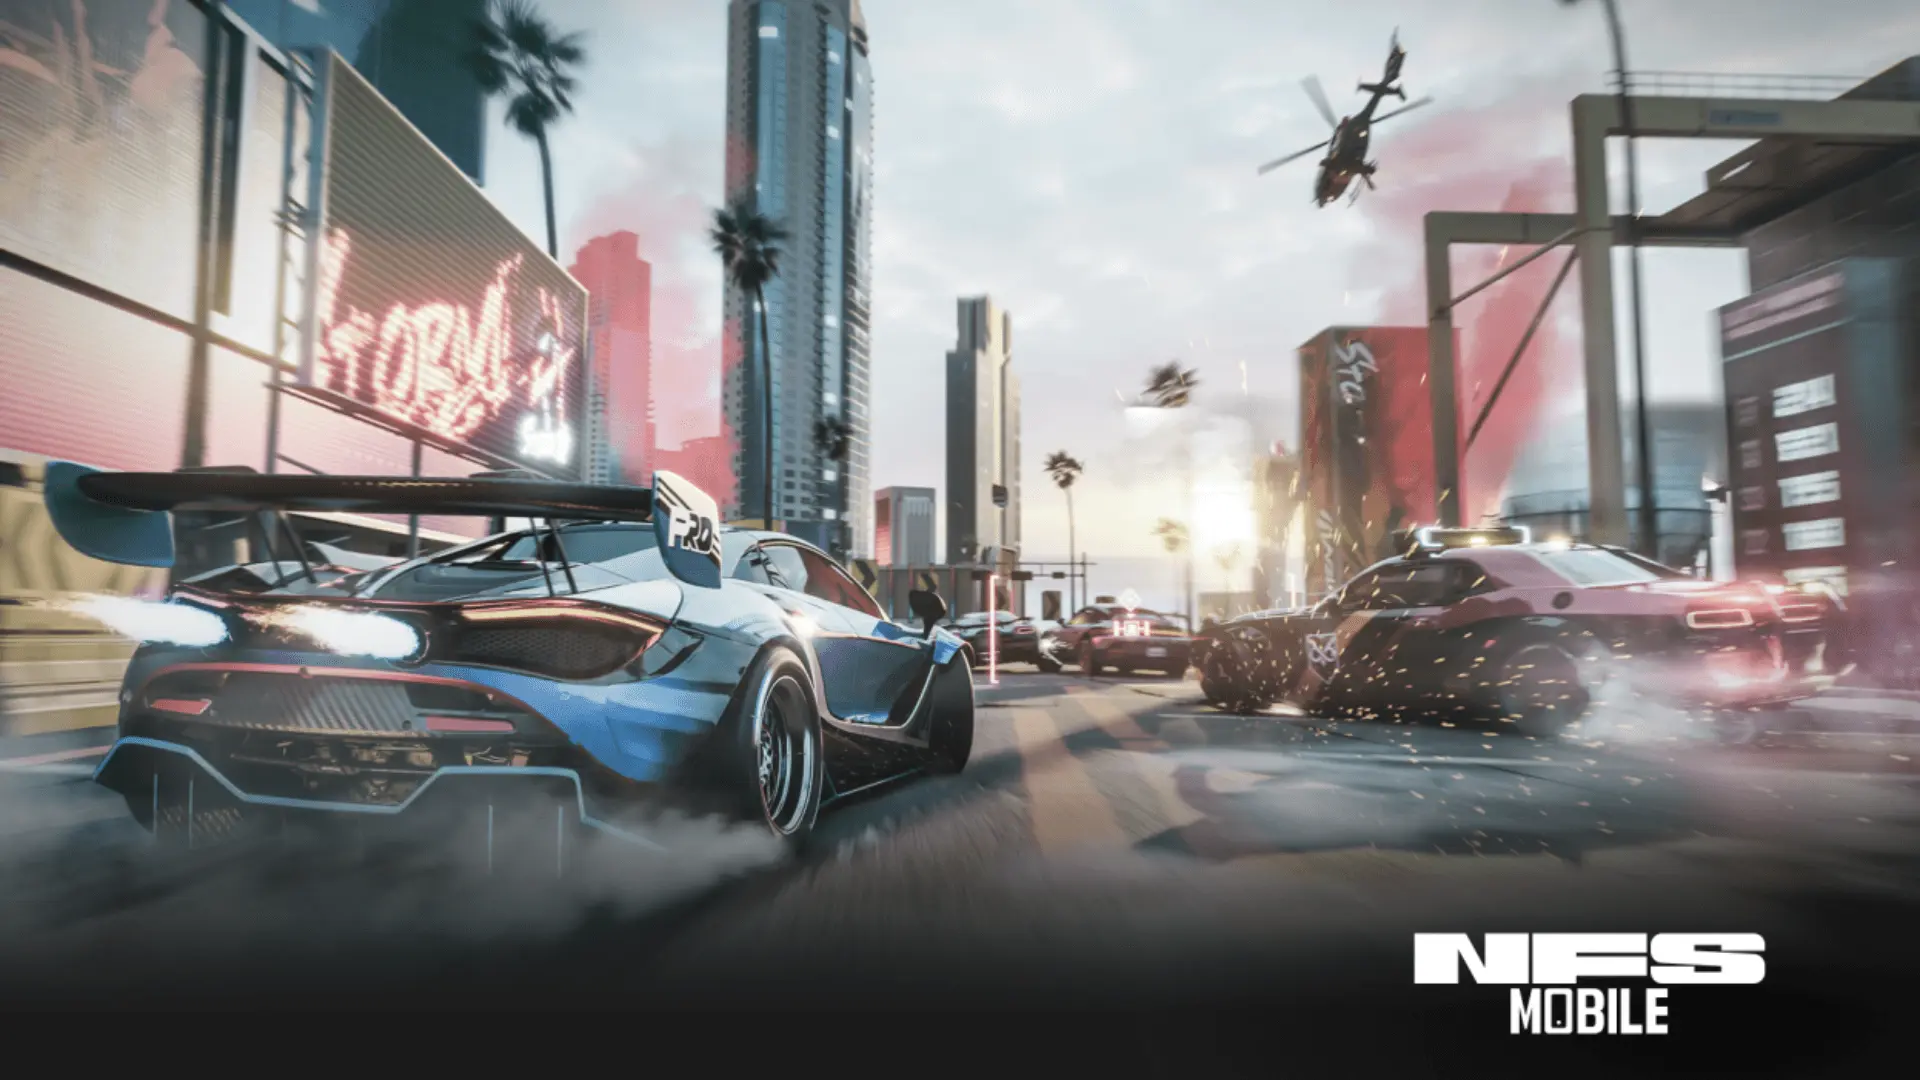 В сети появились новые геймплейные видео Need For Speed Mobile на Unreal Engine 4